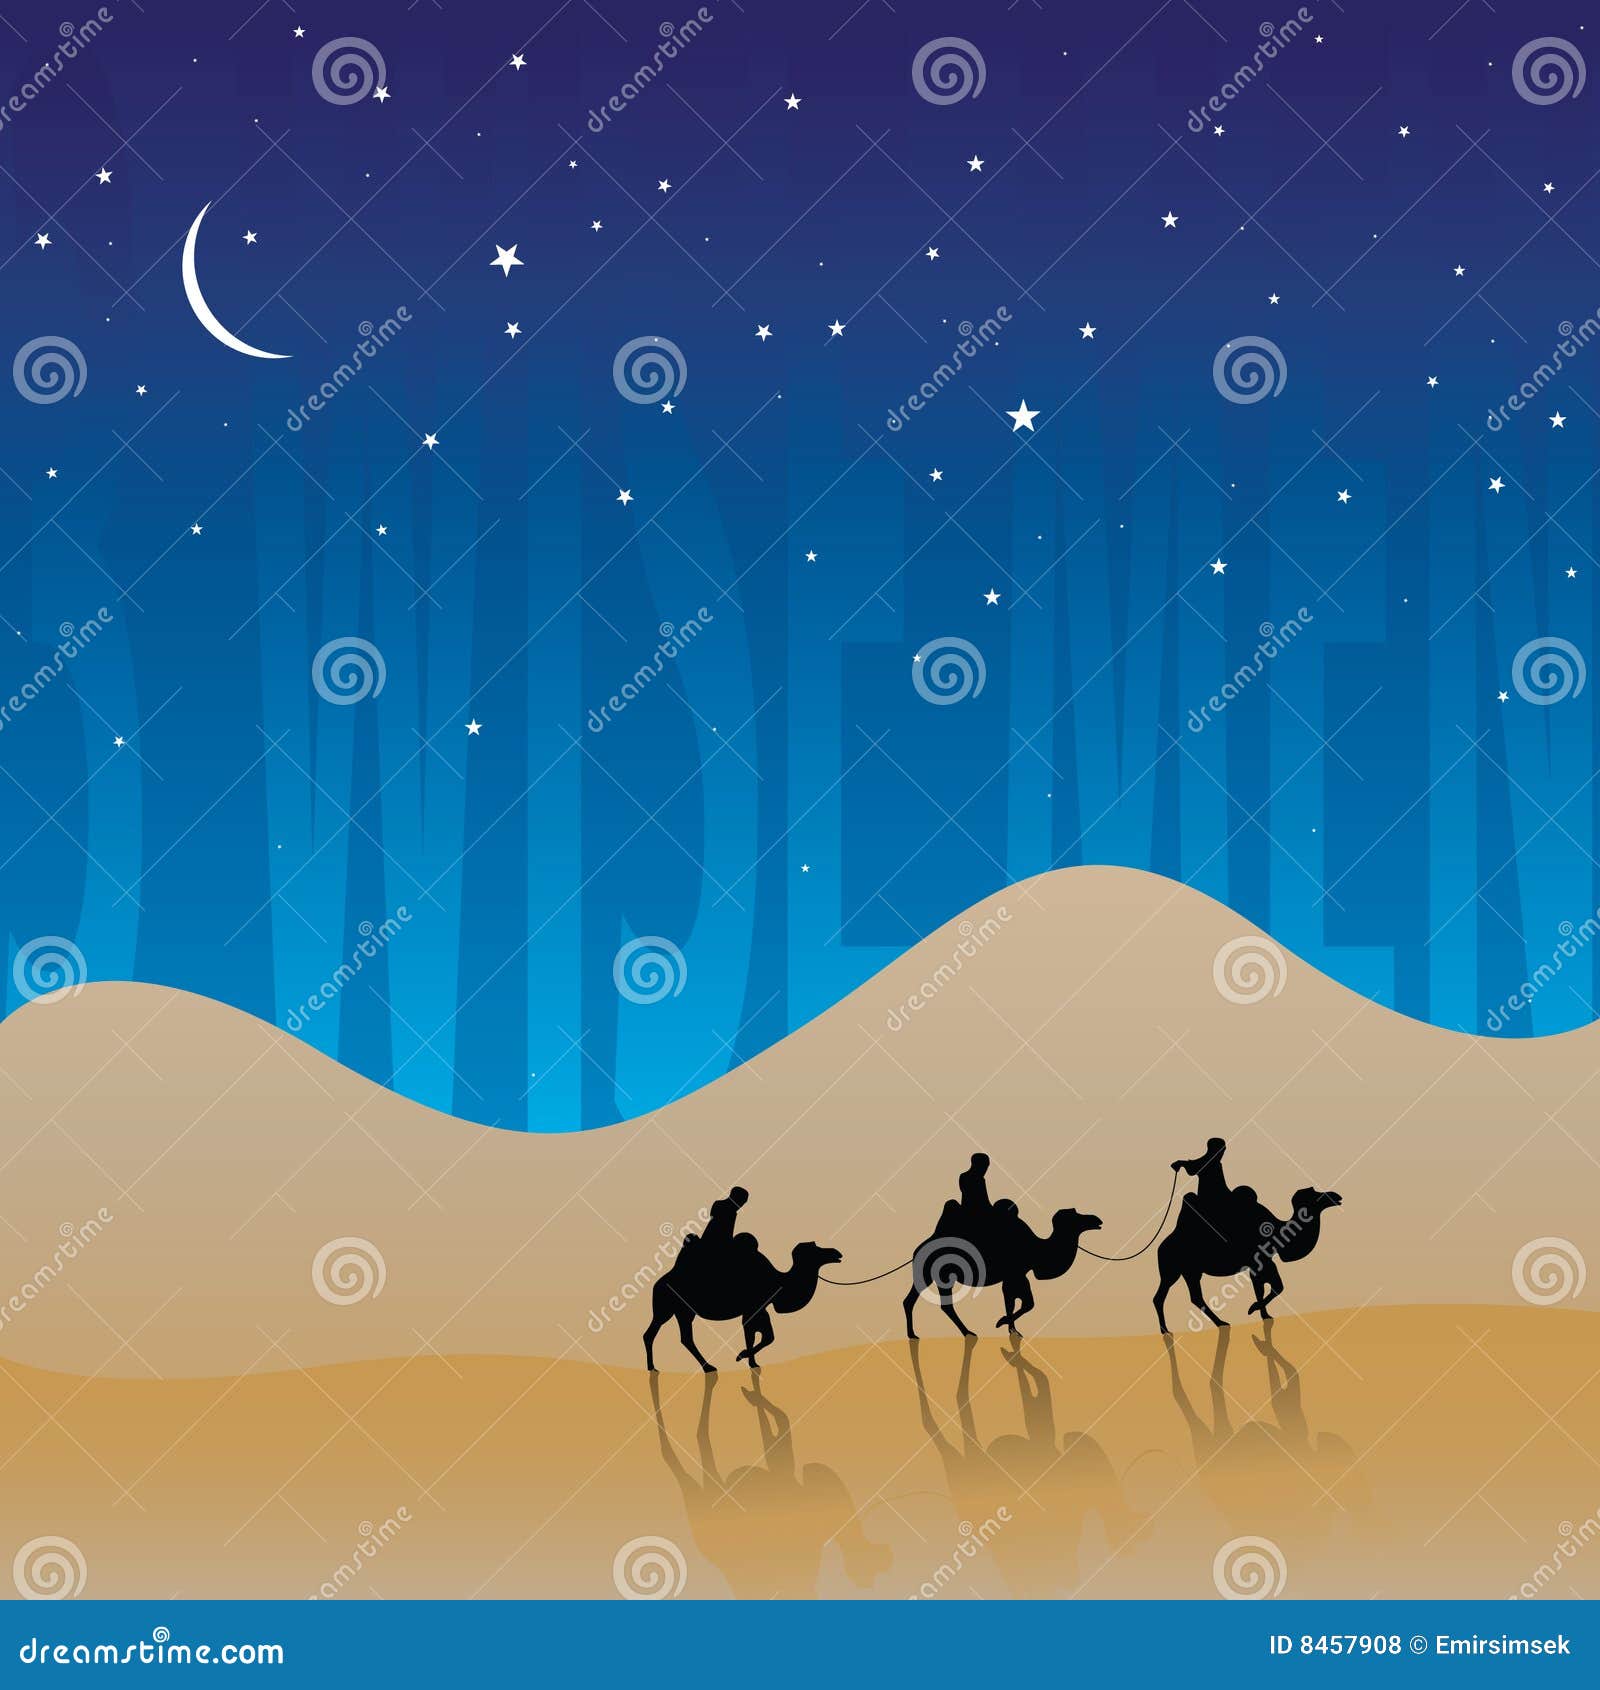 Three Wise Men stock vector. Illustration of desert, sand - 8457908